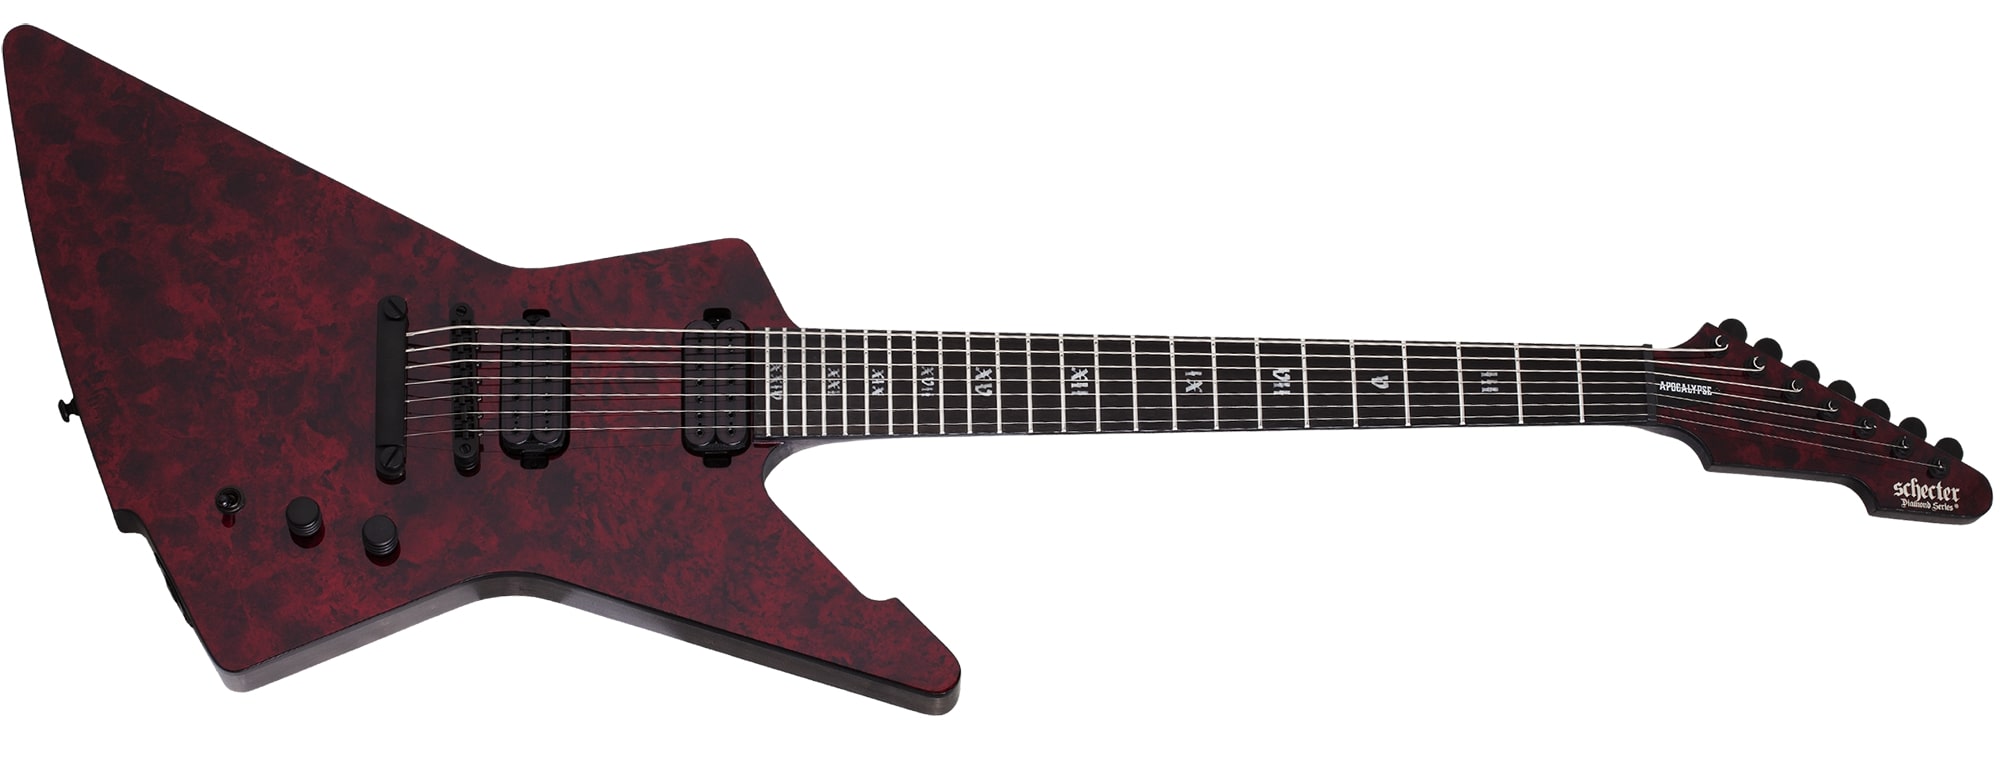 Schecter E-7 Apocalypse 7-String Electric Guitar, Red Reign 1311-SHC